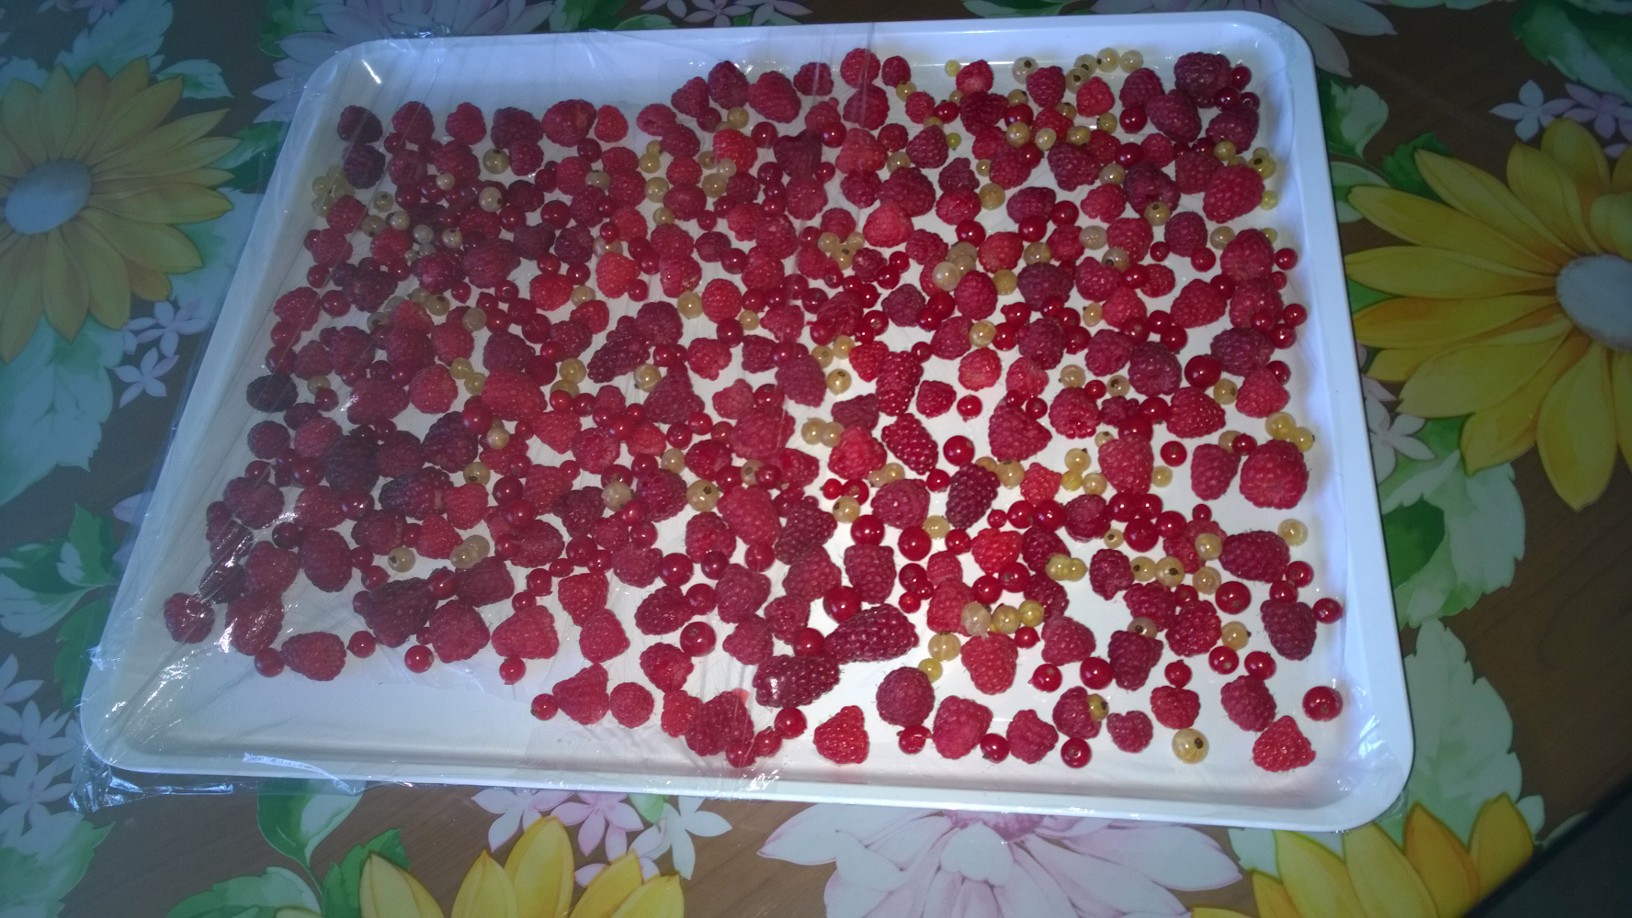 immagine post frutti rossi congelati